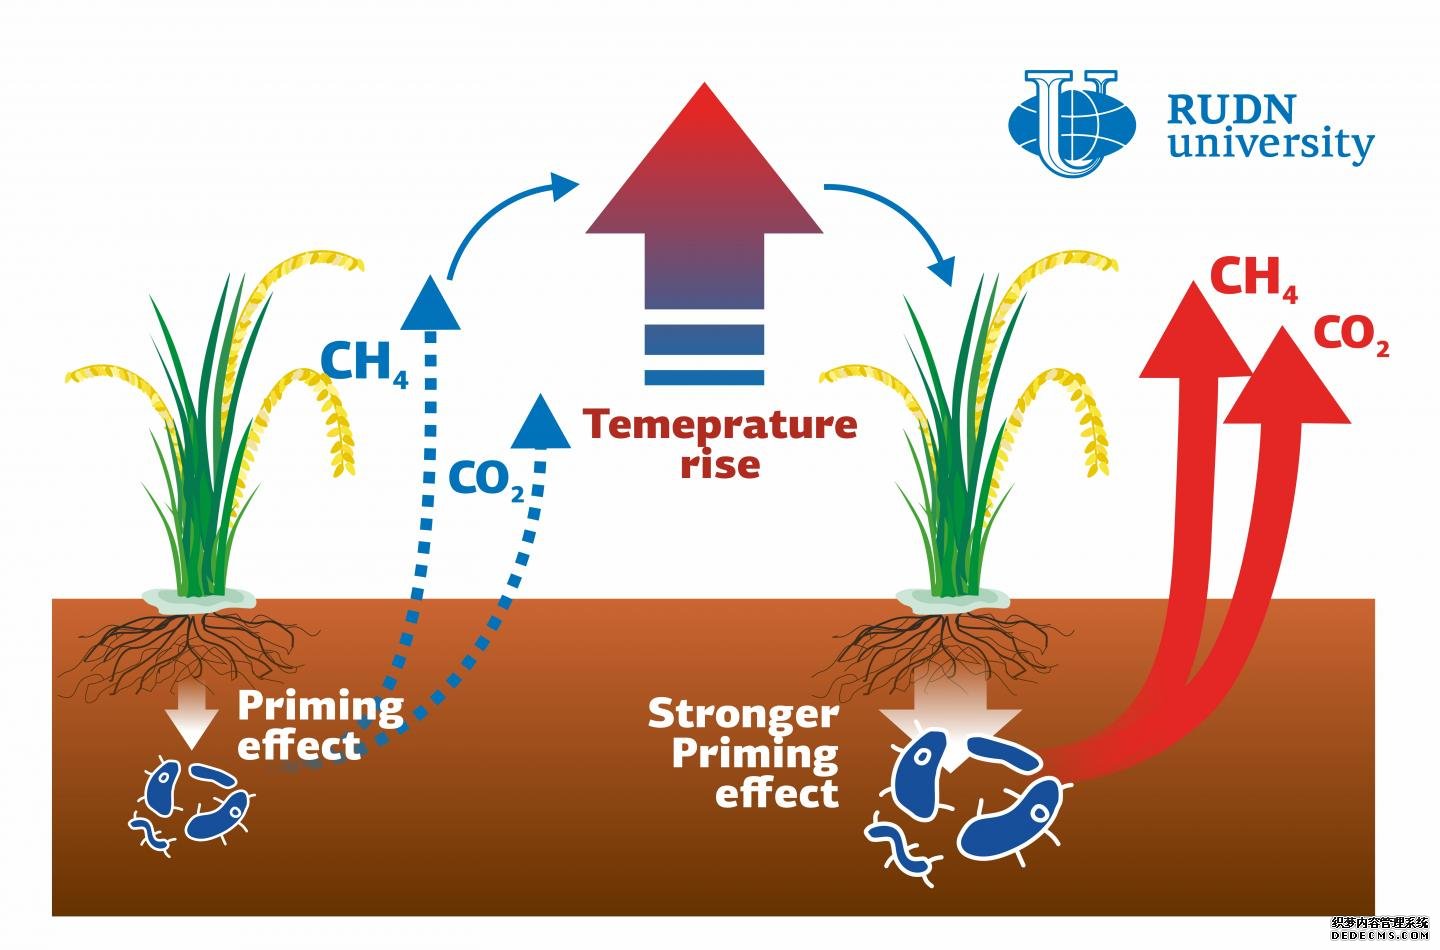 杏耀鲁德大学的科学家展示了全球变暖对水稻土温室气体排放的影响